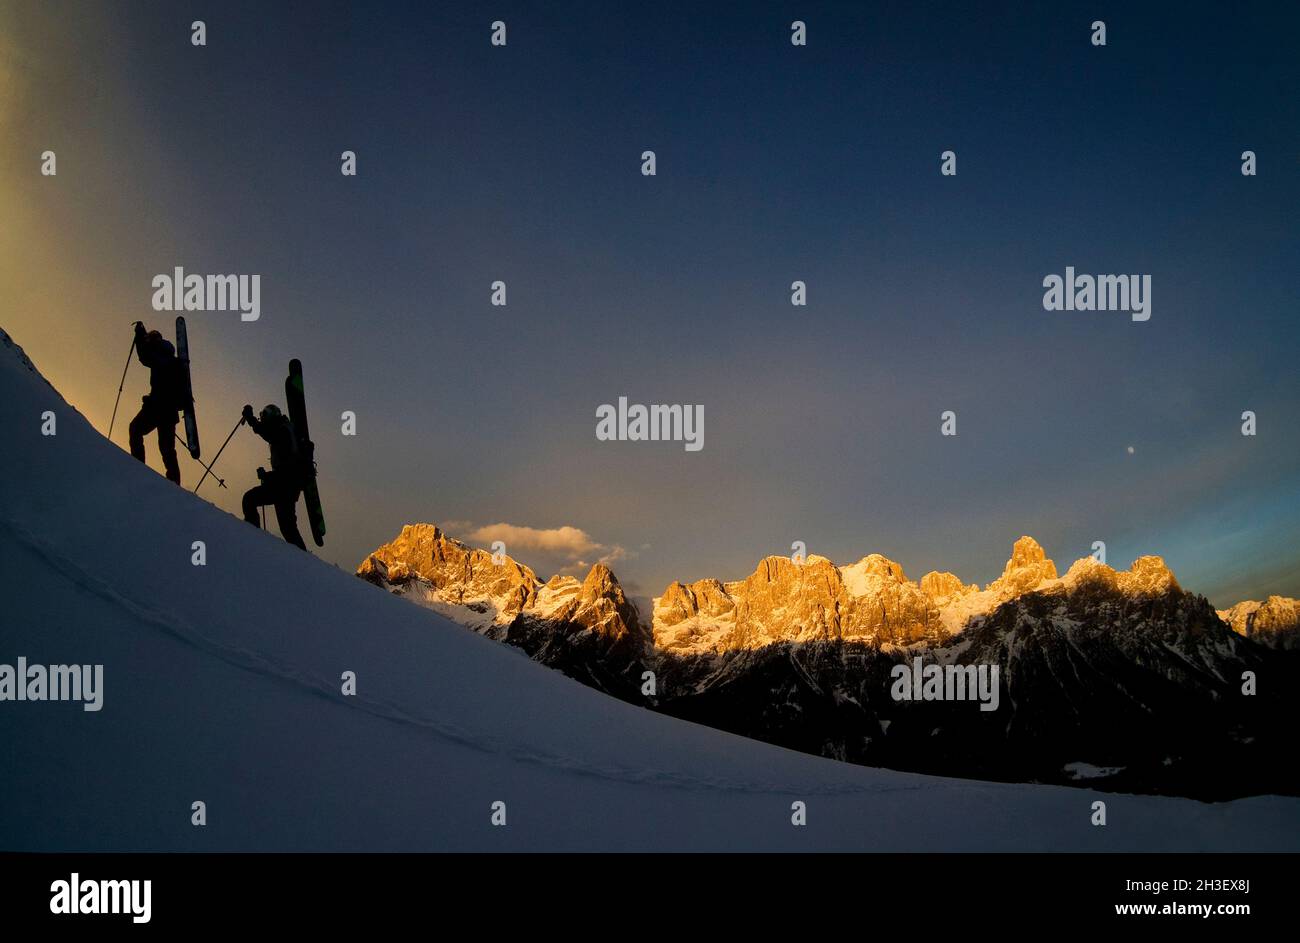 Ski mountaineering on dolomites Stock Photo